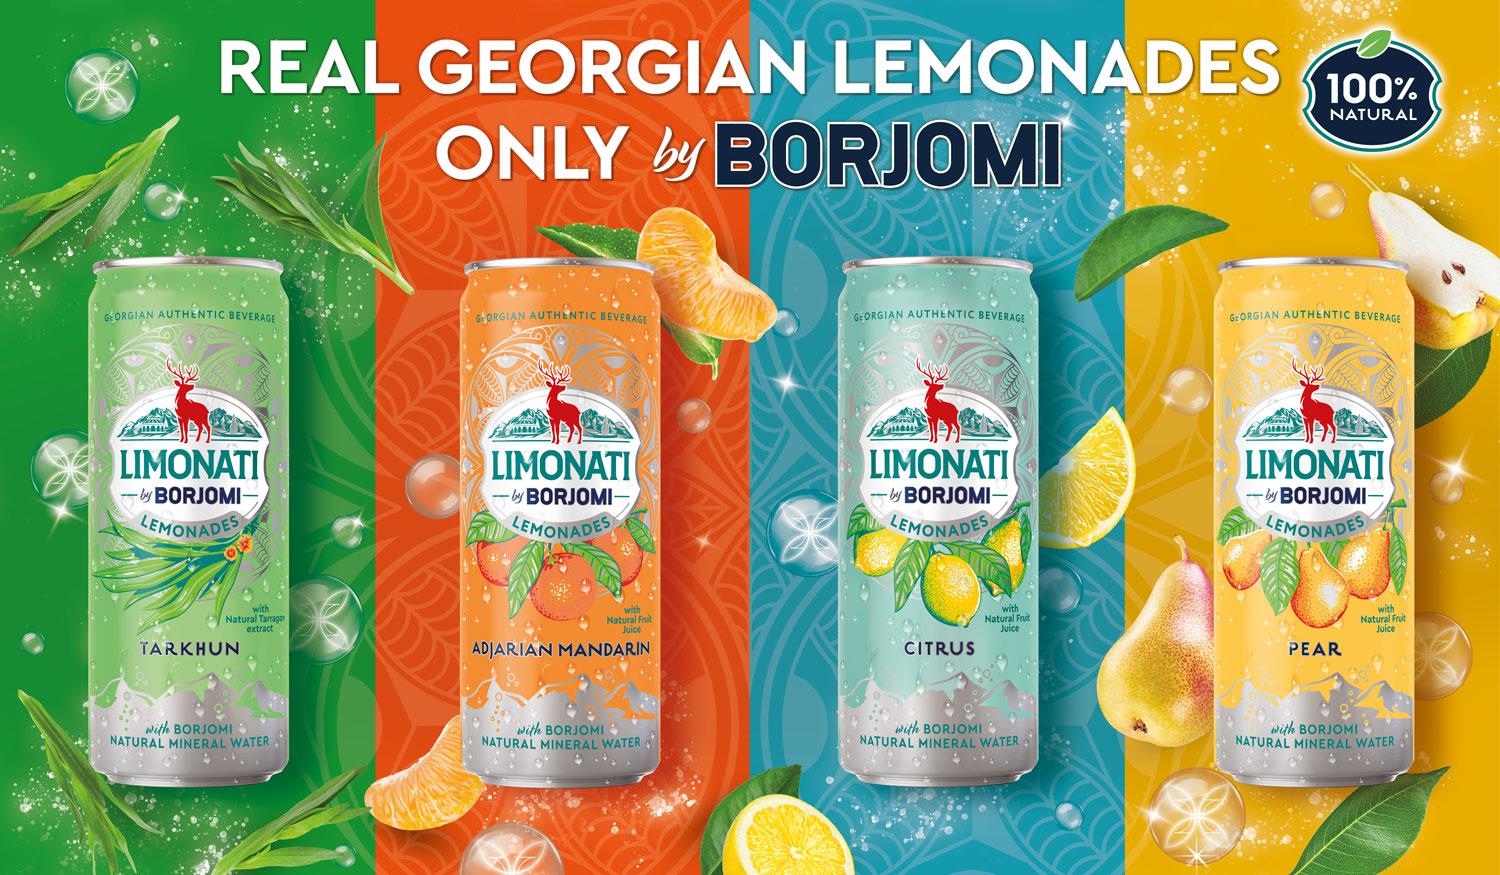 LIMONATI BY BORJOMI - Genuine Georgian Lemonade, Only By Borjomi